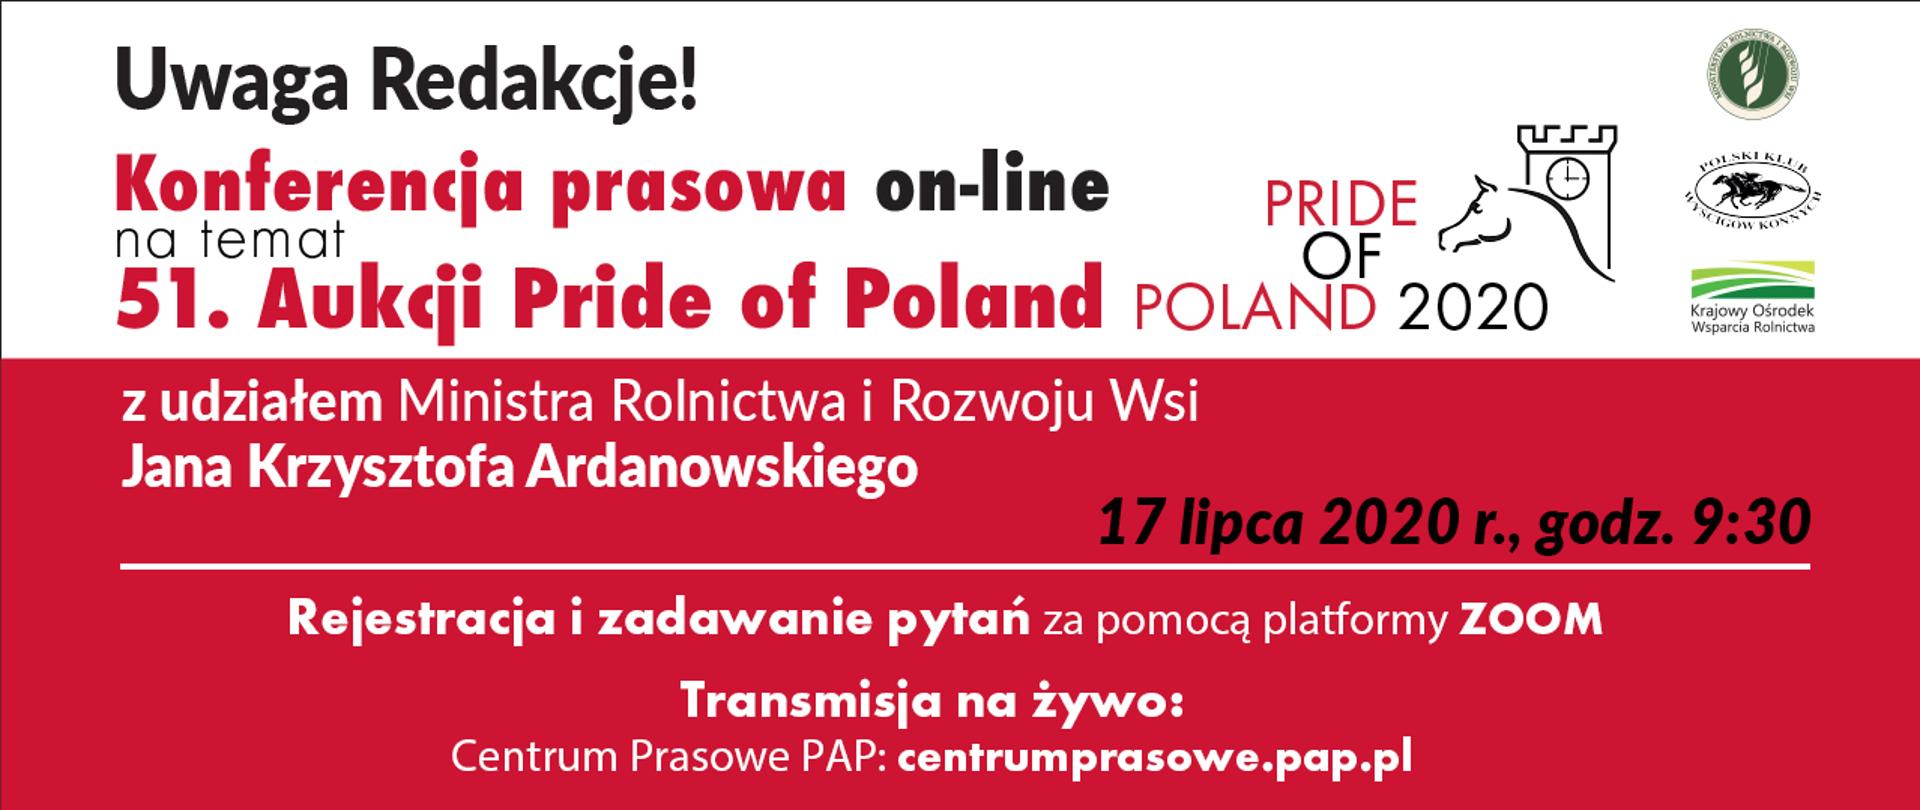 Baner z zaproszeniem na 51. aukcję Pride of Poland